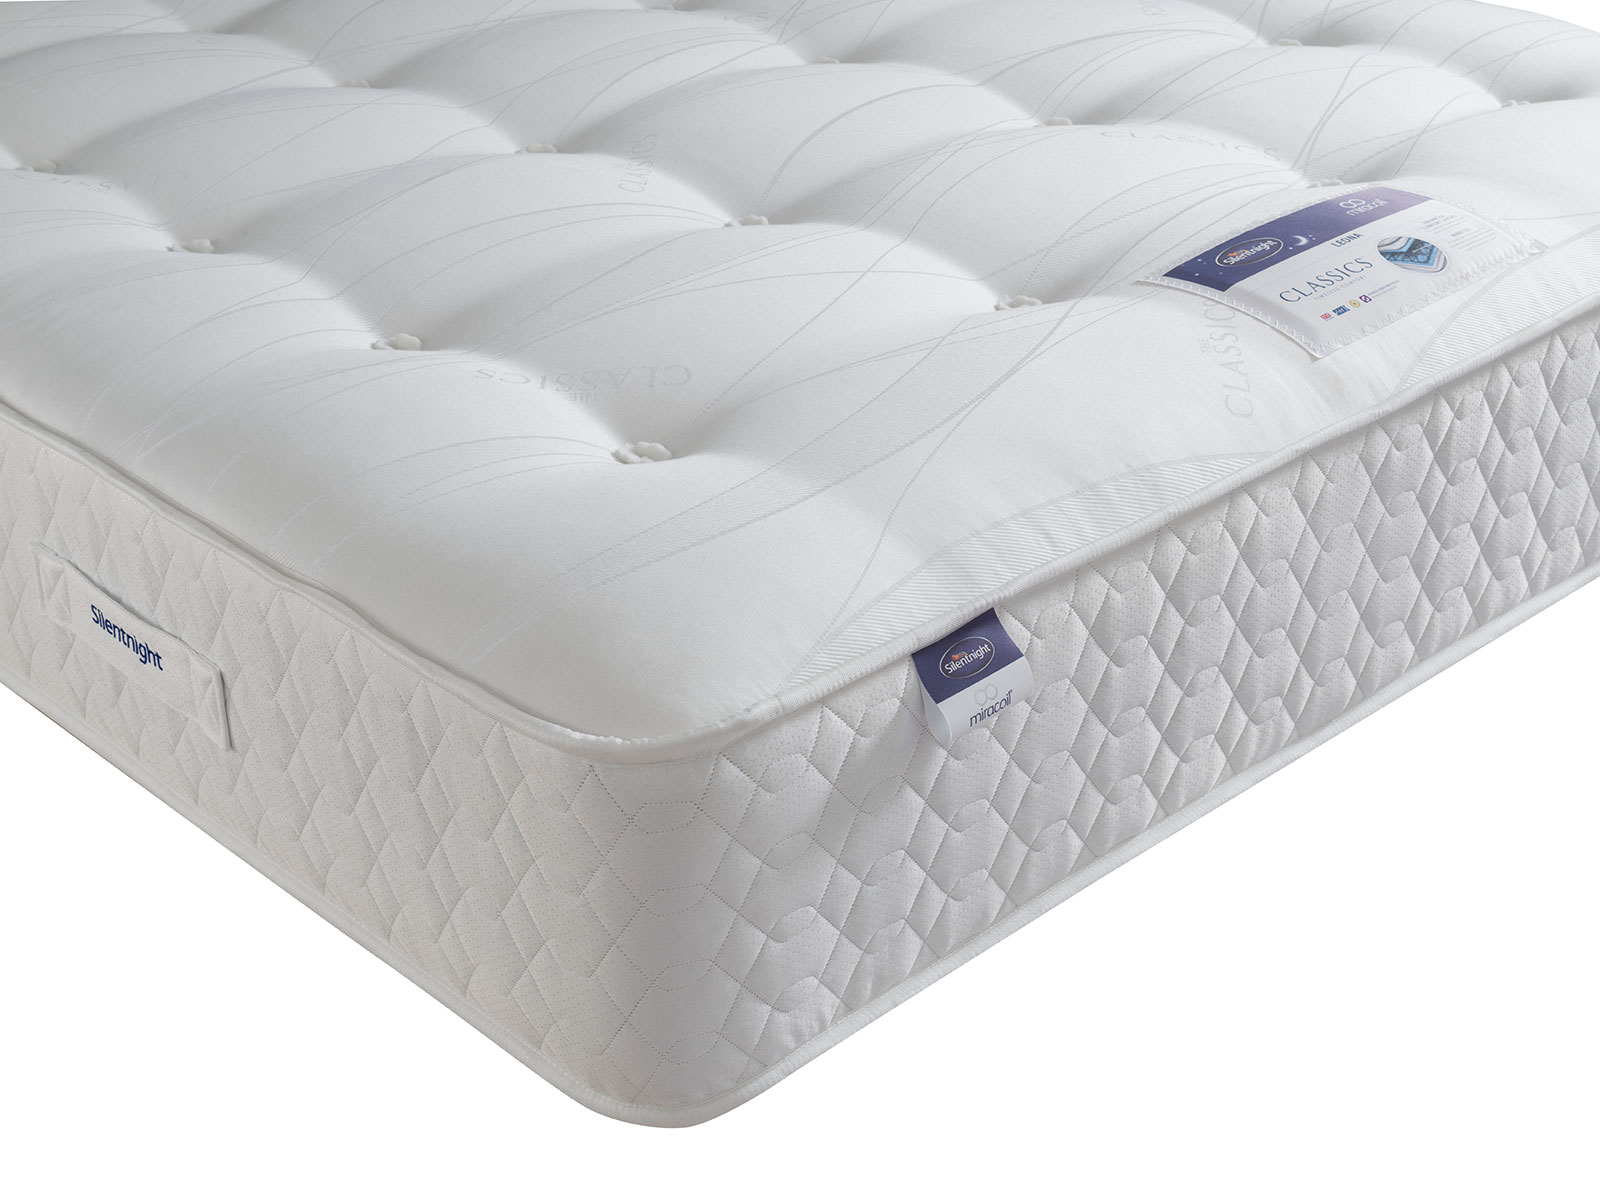 silentnight comfort miracoil mattress double review